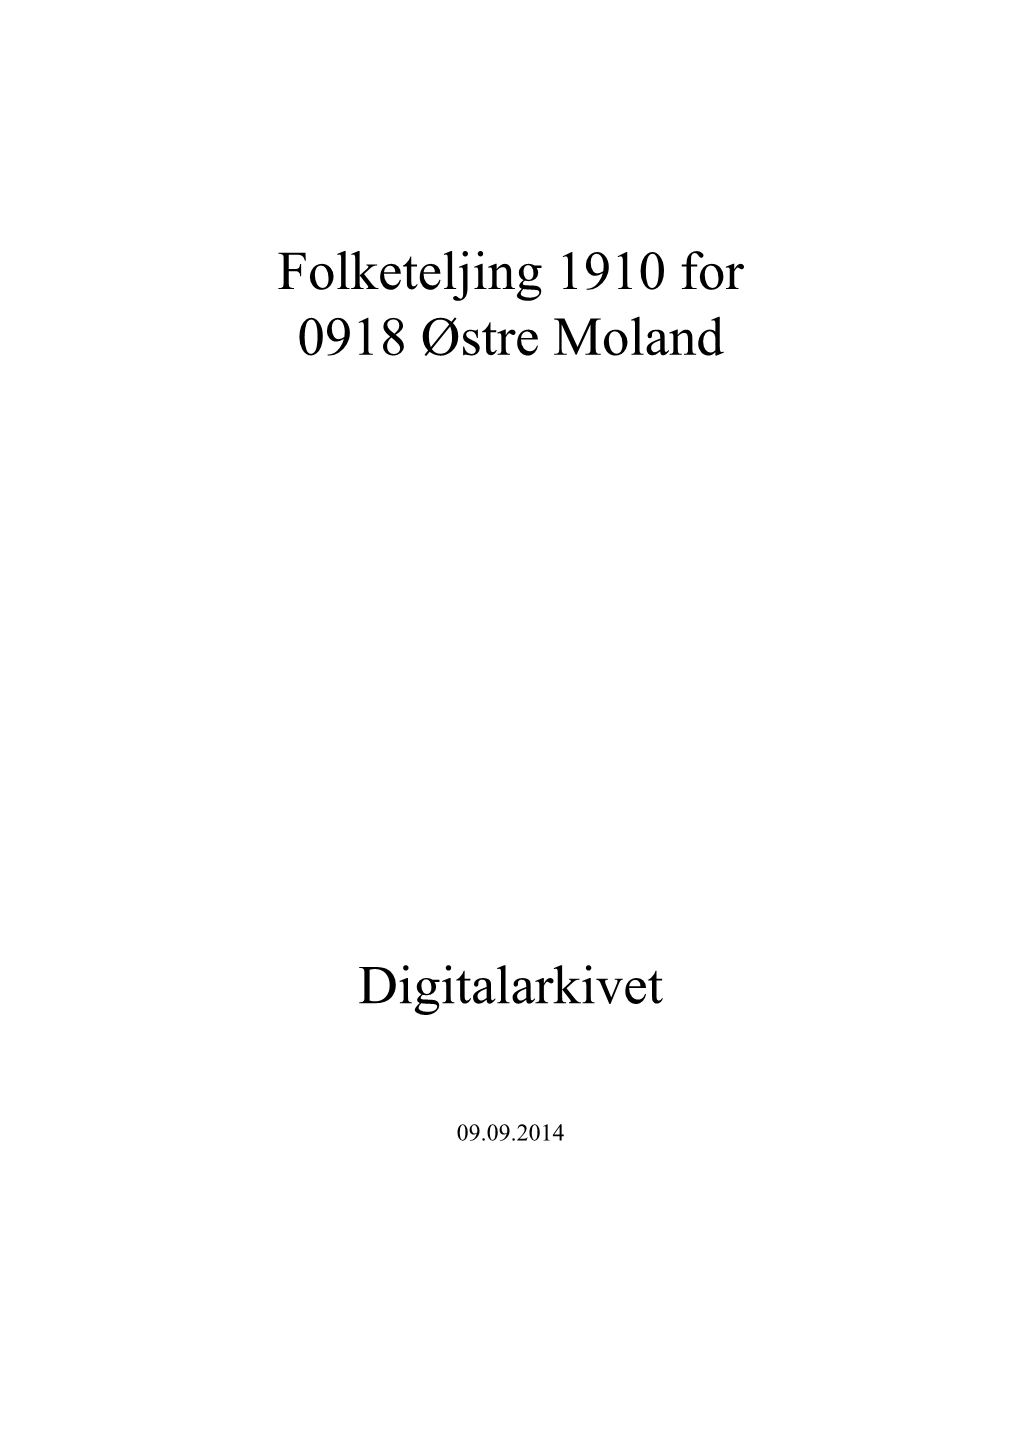 Folketeljing 1910 for 0918 Østre Moland Digitalarkivet